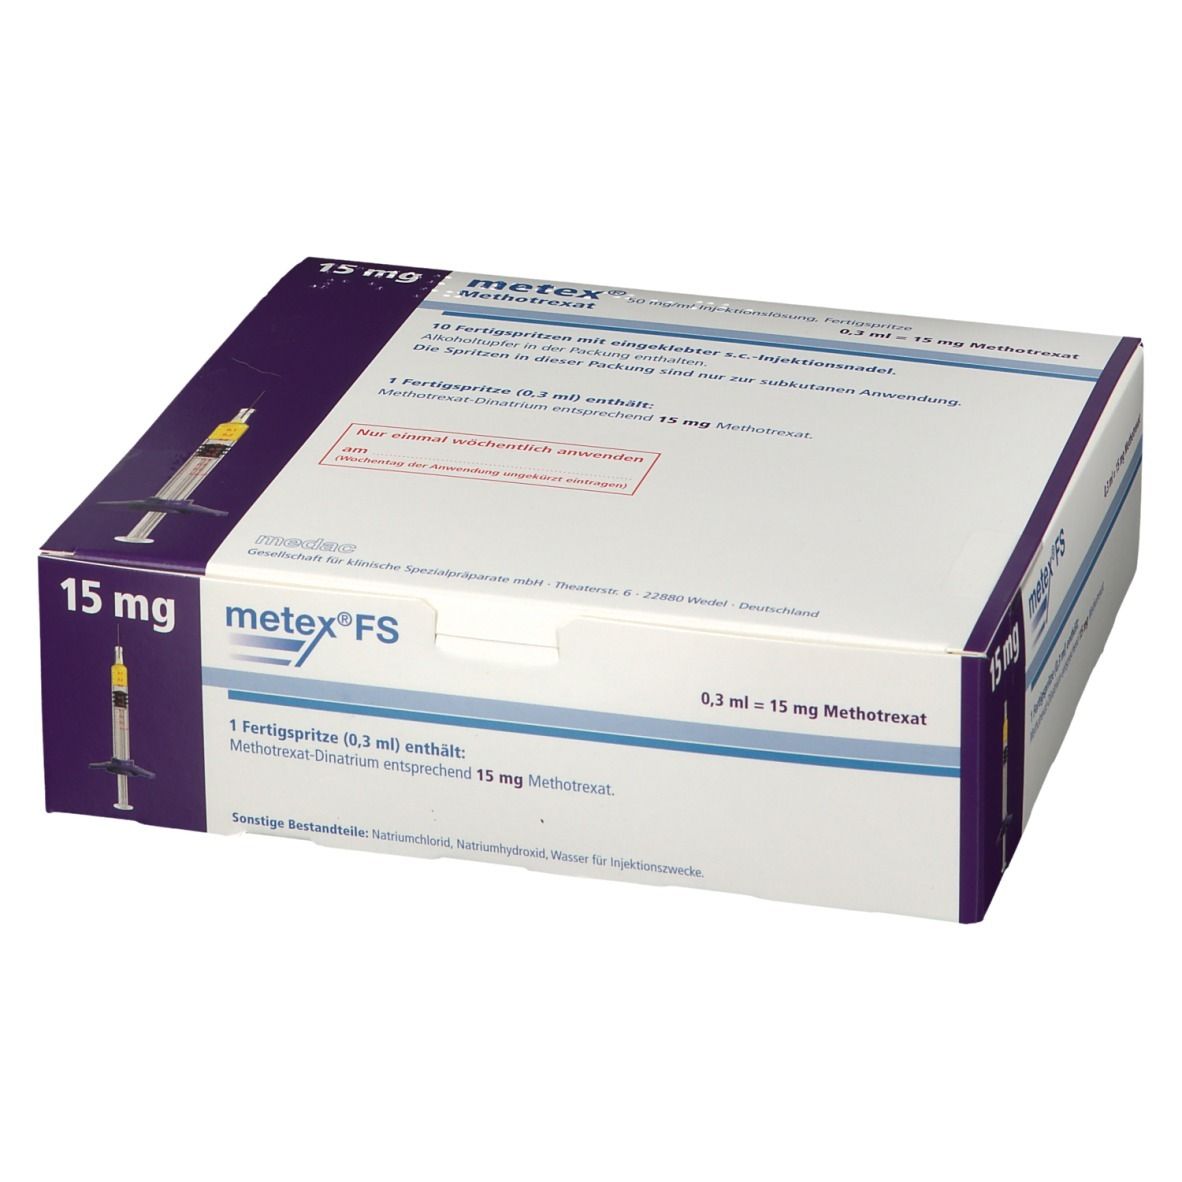 metex® FS 15 mg